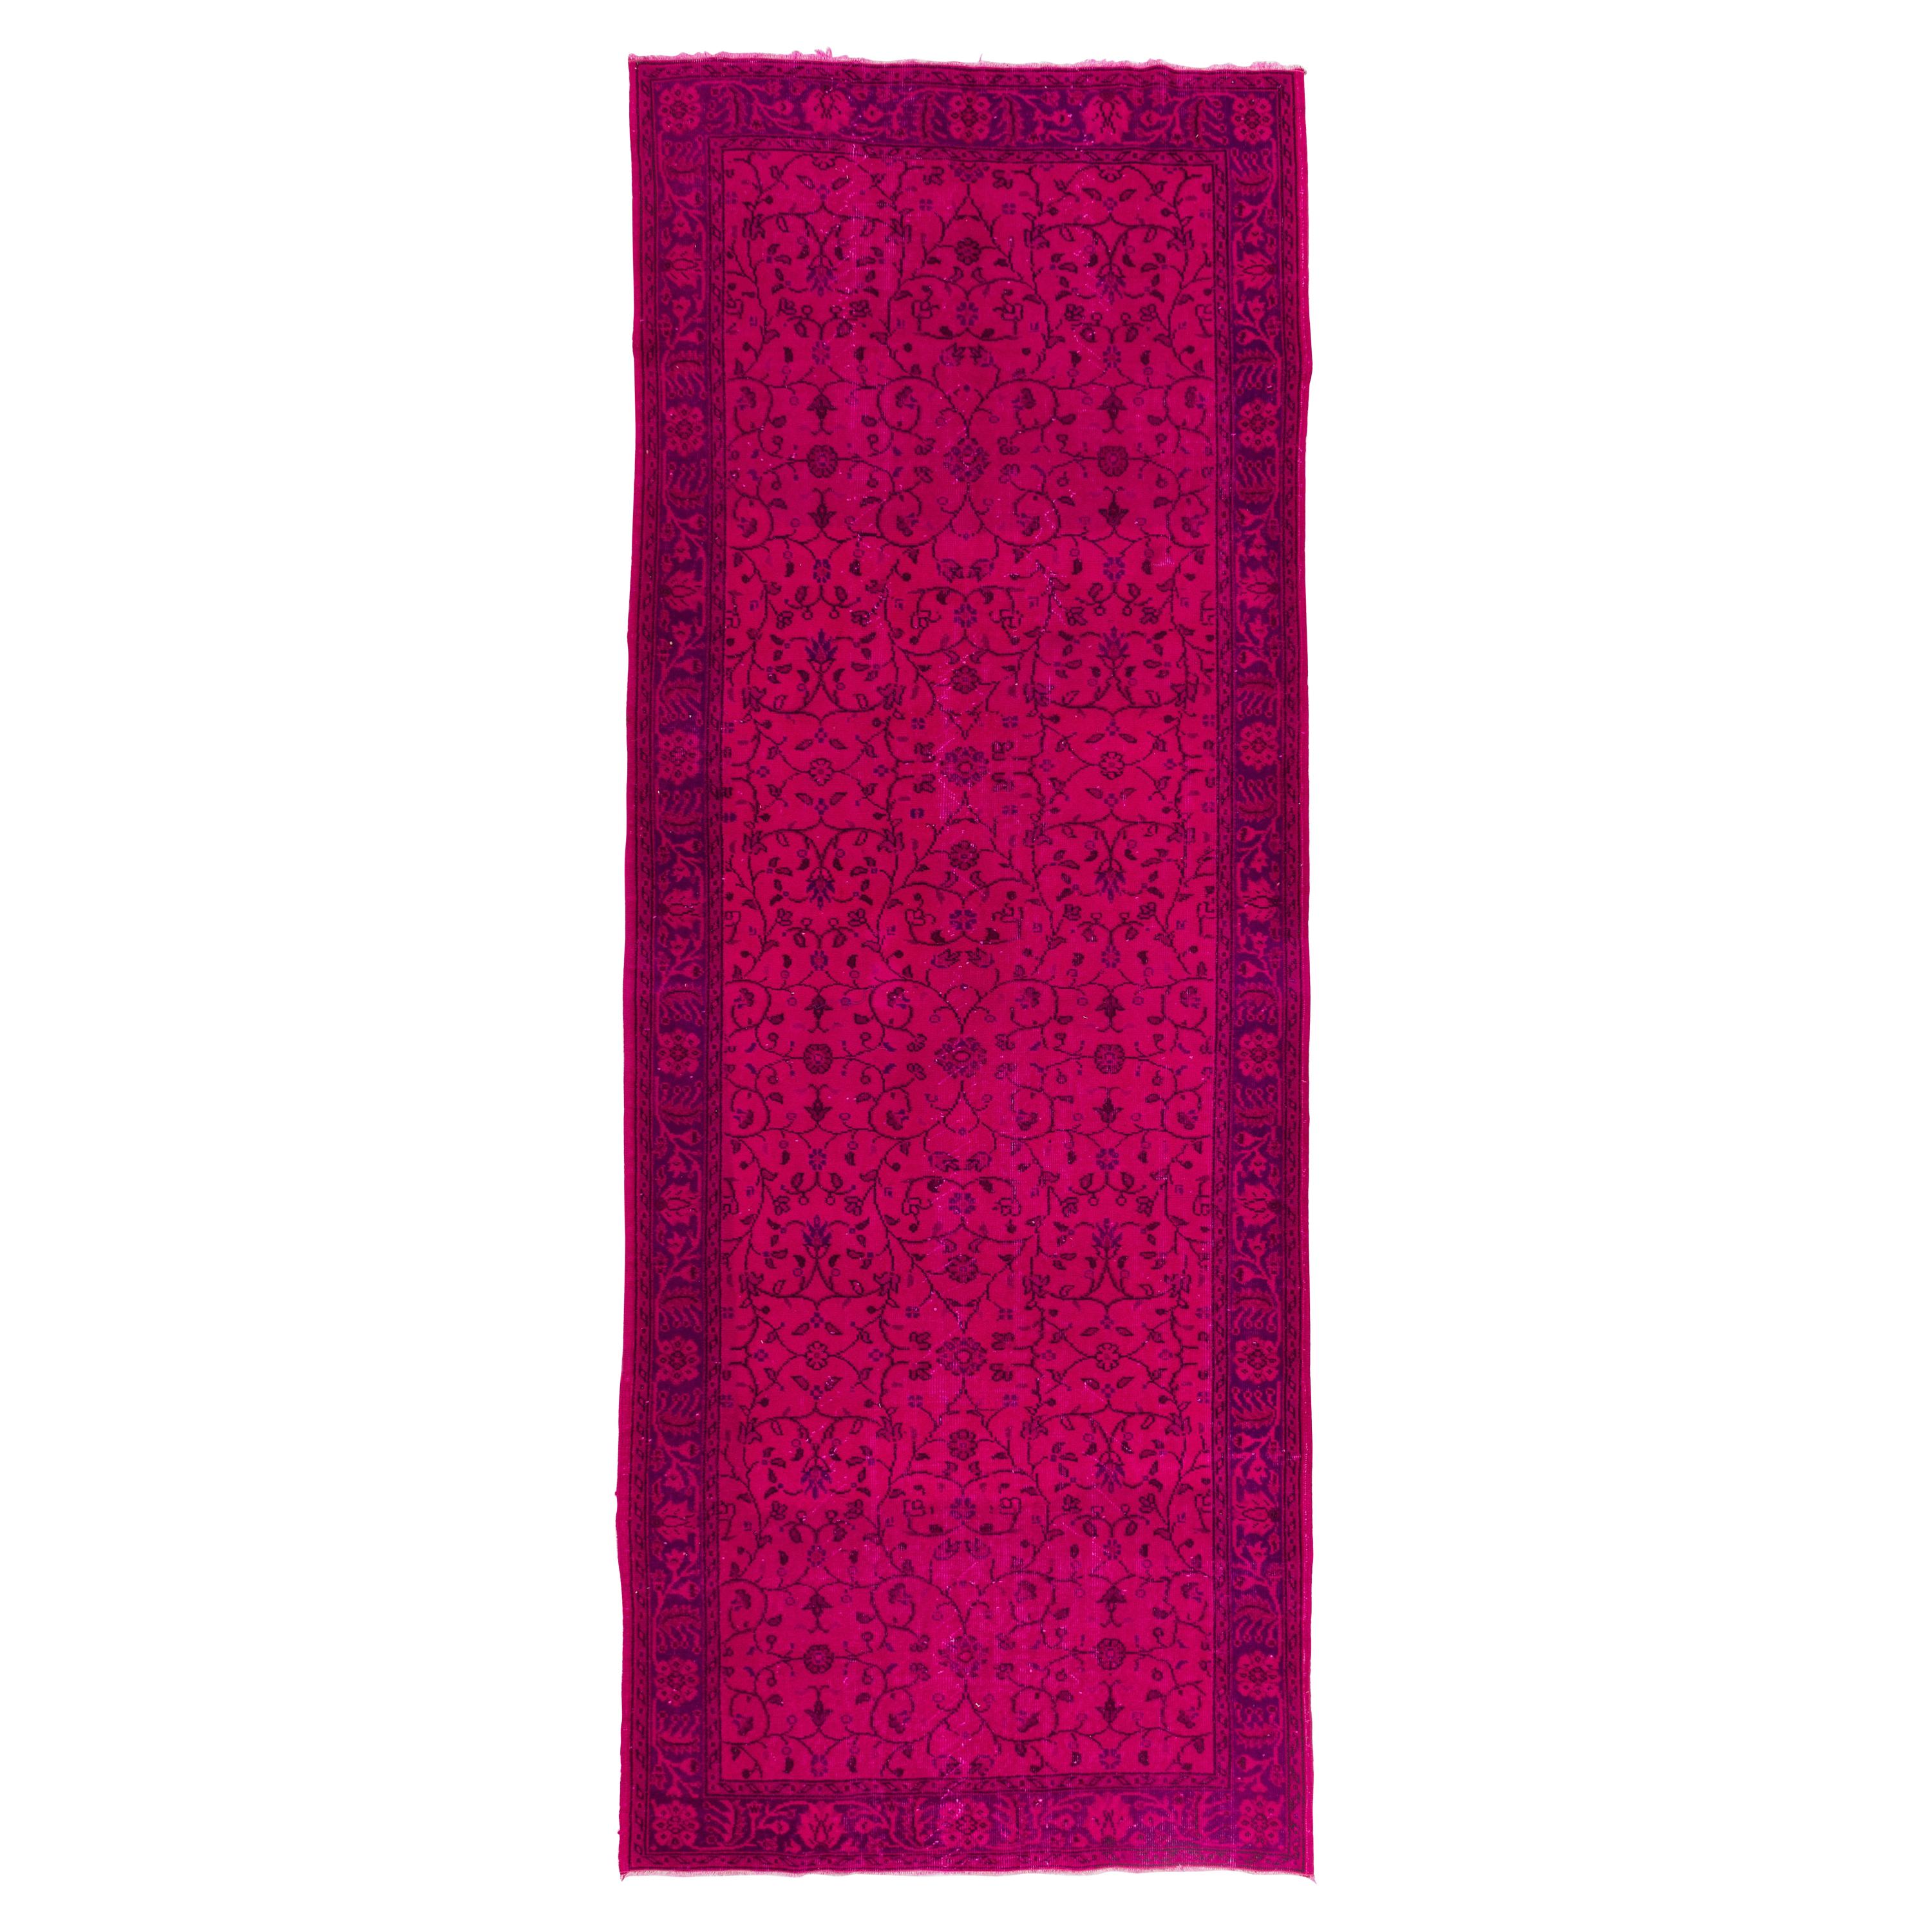 5x13 Ft Handmade Vintage Floral Pattern Runner Rug in Hot Pink for Hallway Decor